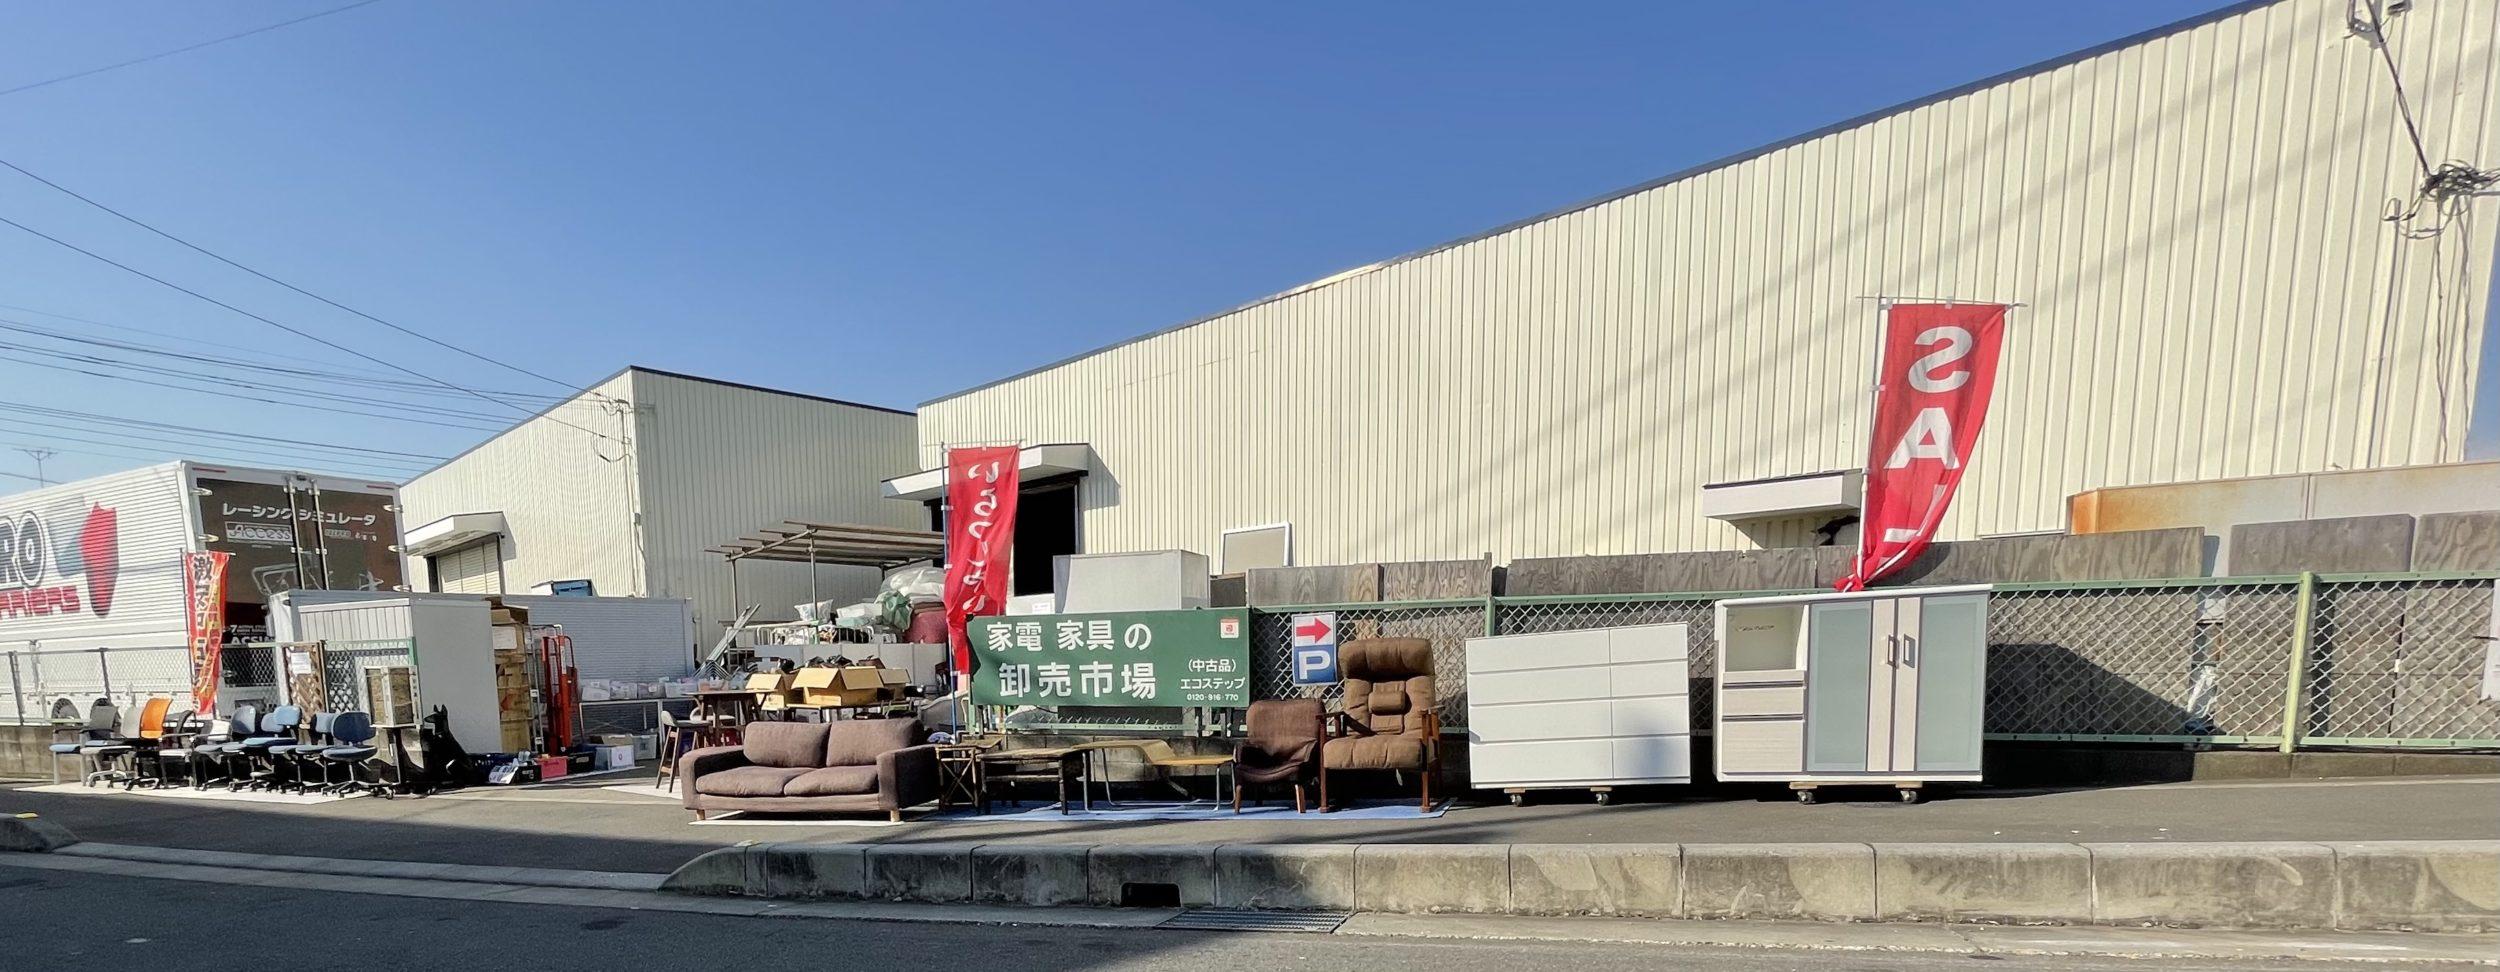 実店舗があるエコステップ | 埼玉県の不用品買取・回収はエコステップ！
